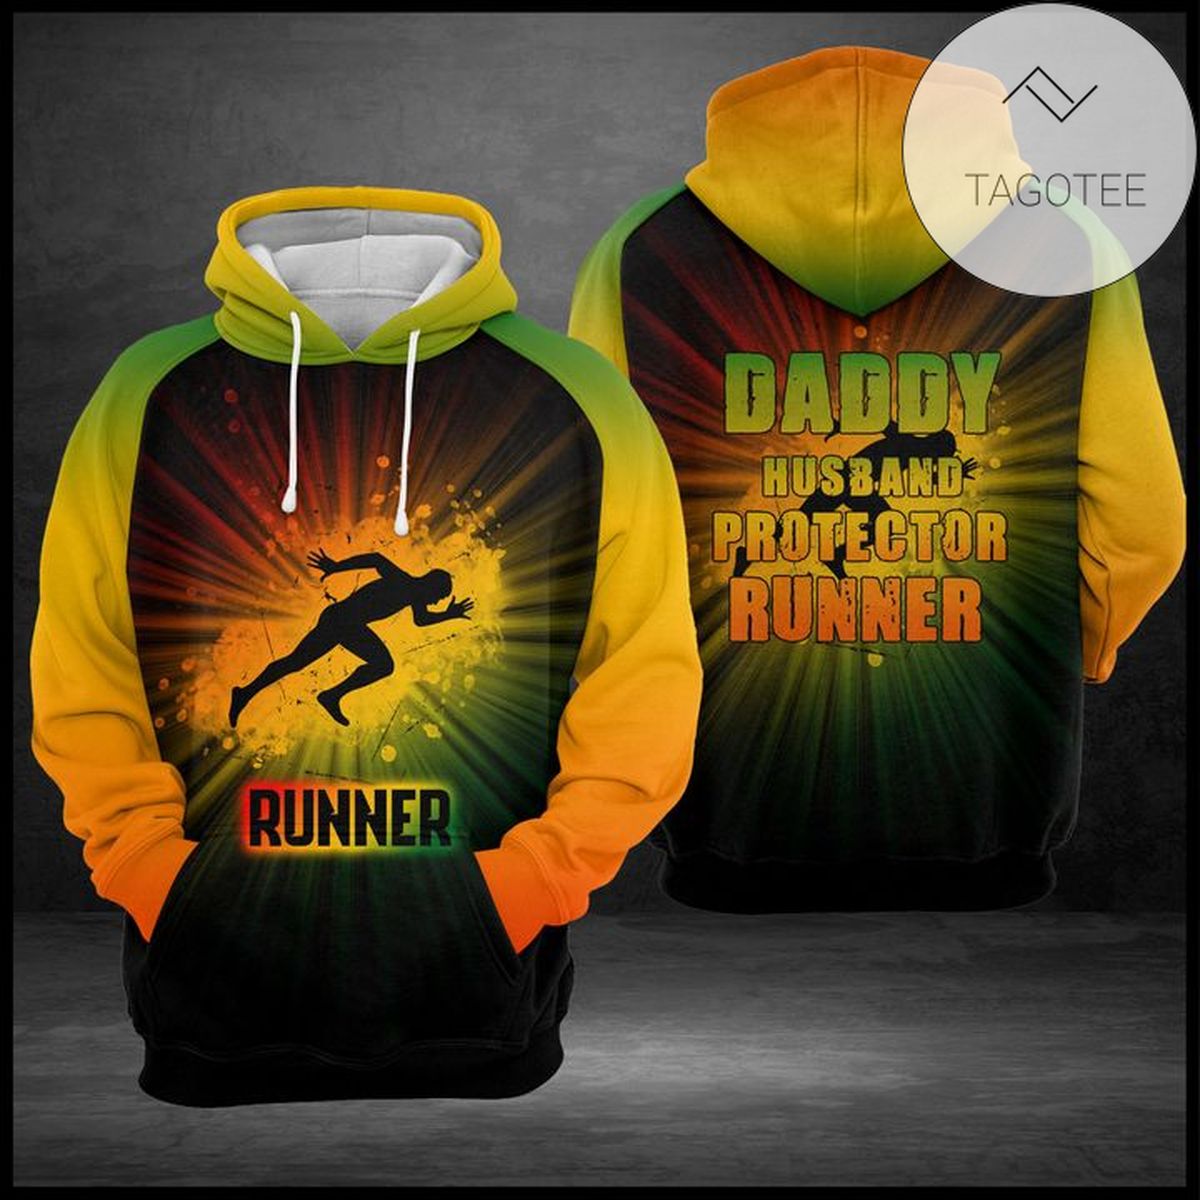 Daddy Husband Protector Runner 3D Printed Hoodie Zipper Hooded Jacket